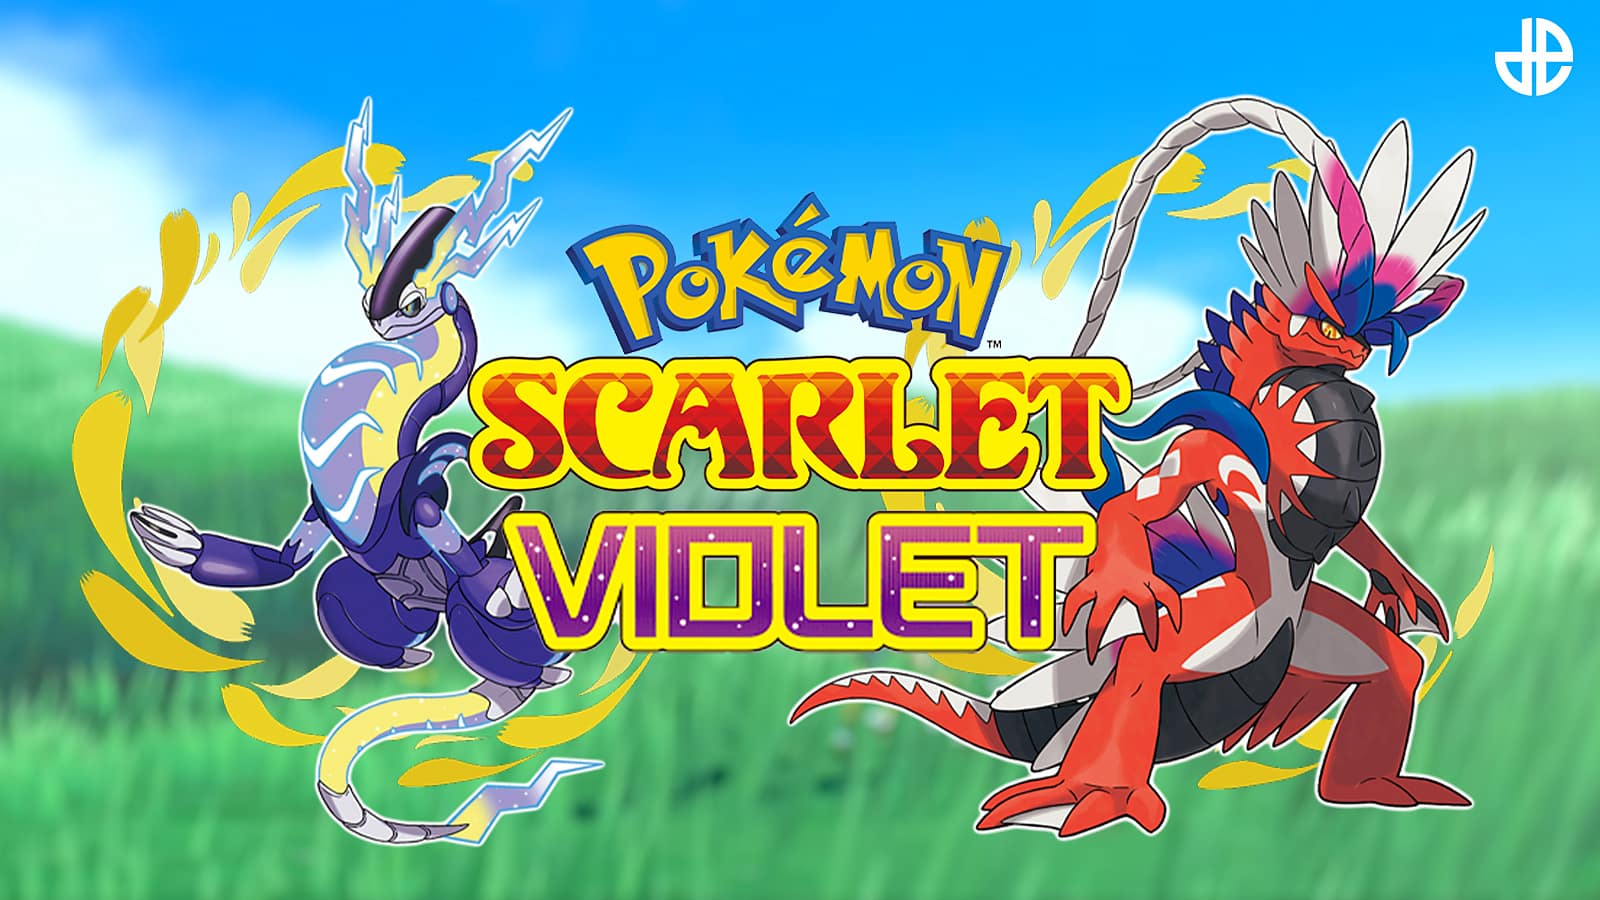 Koraidon and Miraidon appearing as Pokemon Scarlet & Violet Legendaries